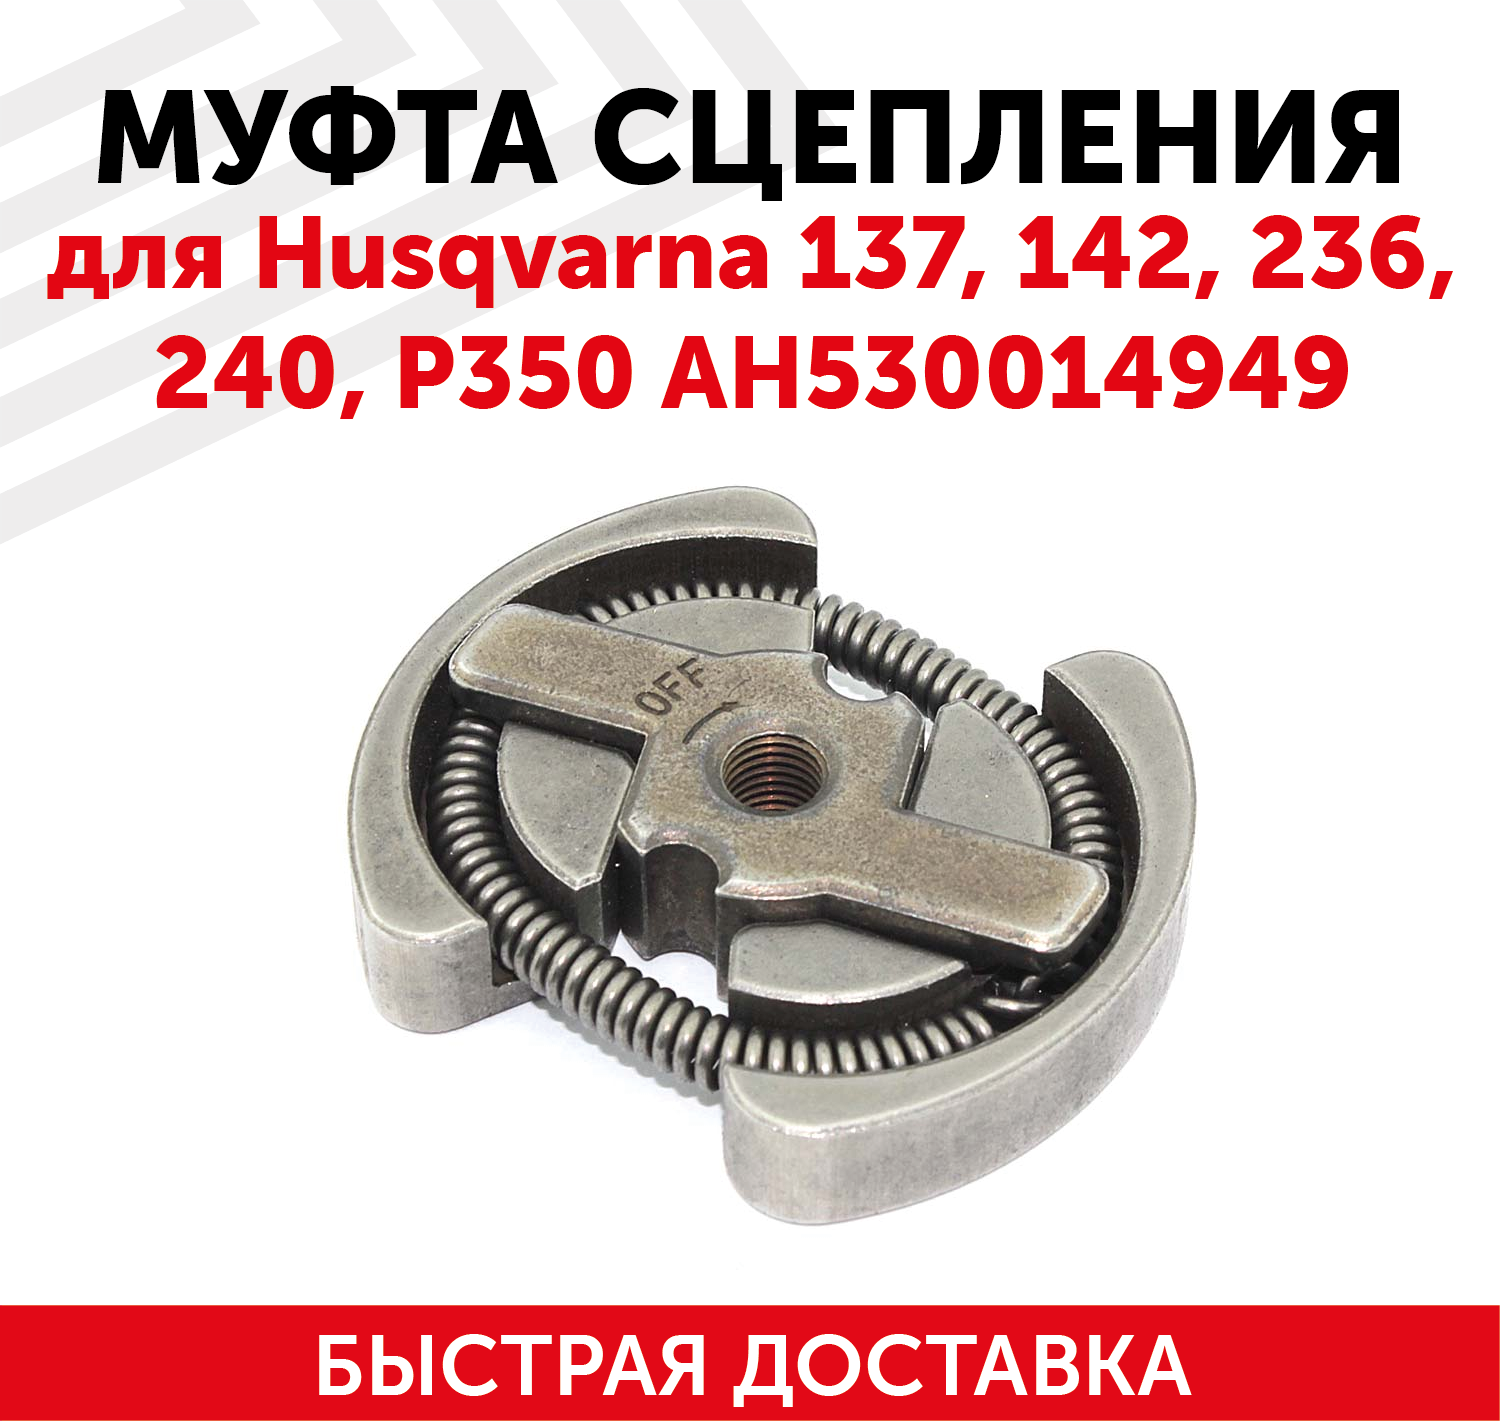 Муфта сцепления для бензопилы (цепной пилы) Husqvarna 137/142/236/240/P350 АН530014949 122003